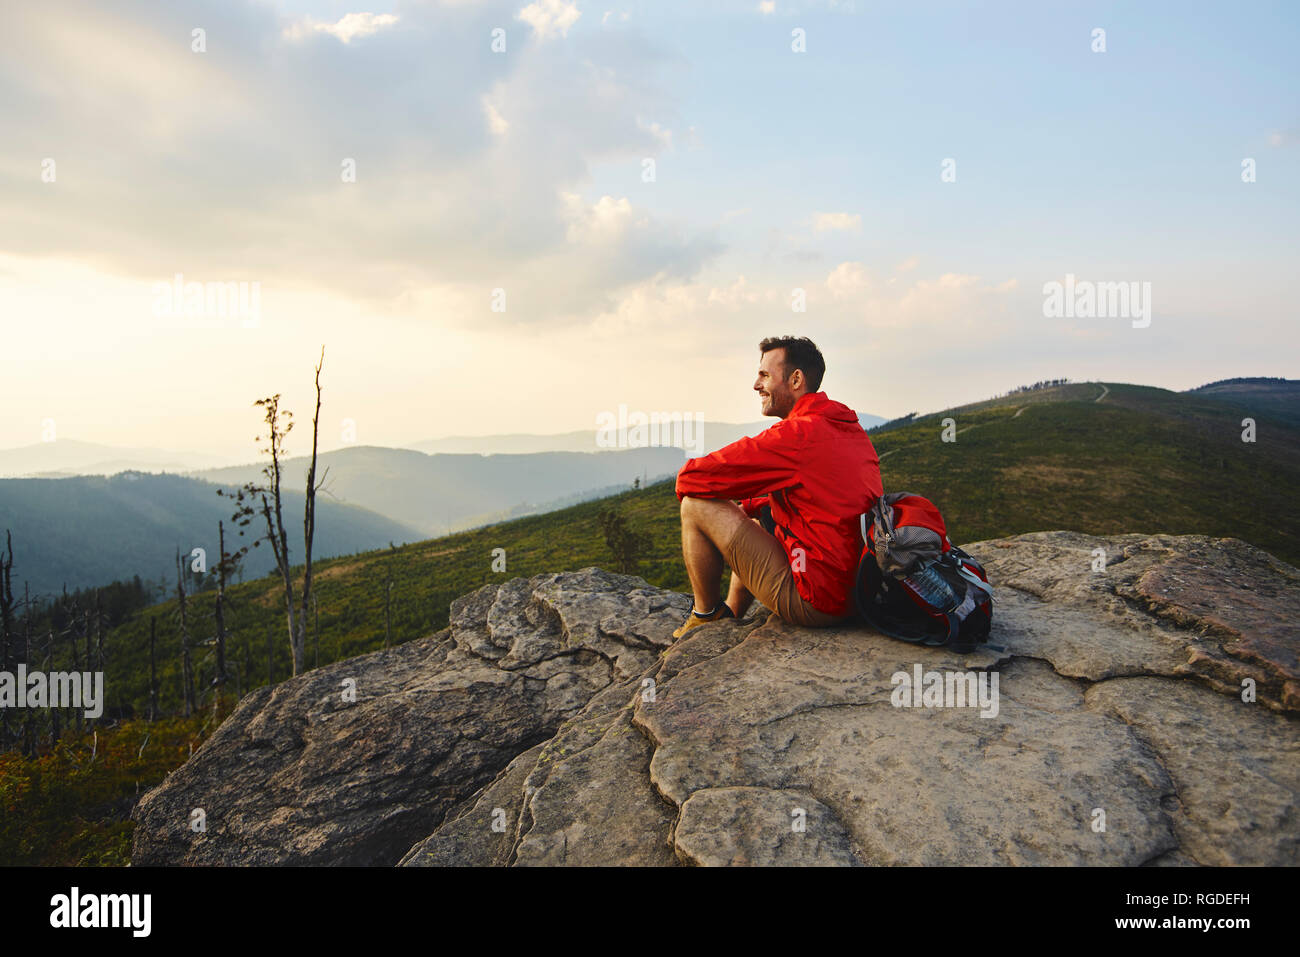 Man sitting on rock enjoying the view during hiking trip Stock Photo